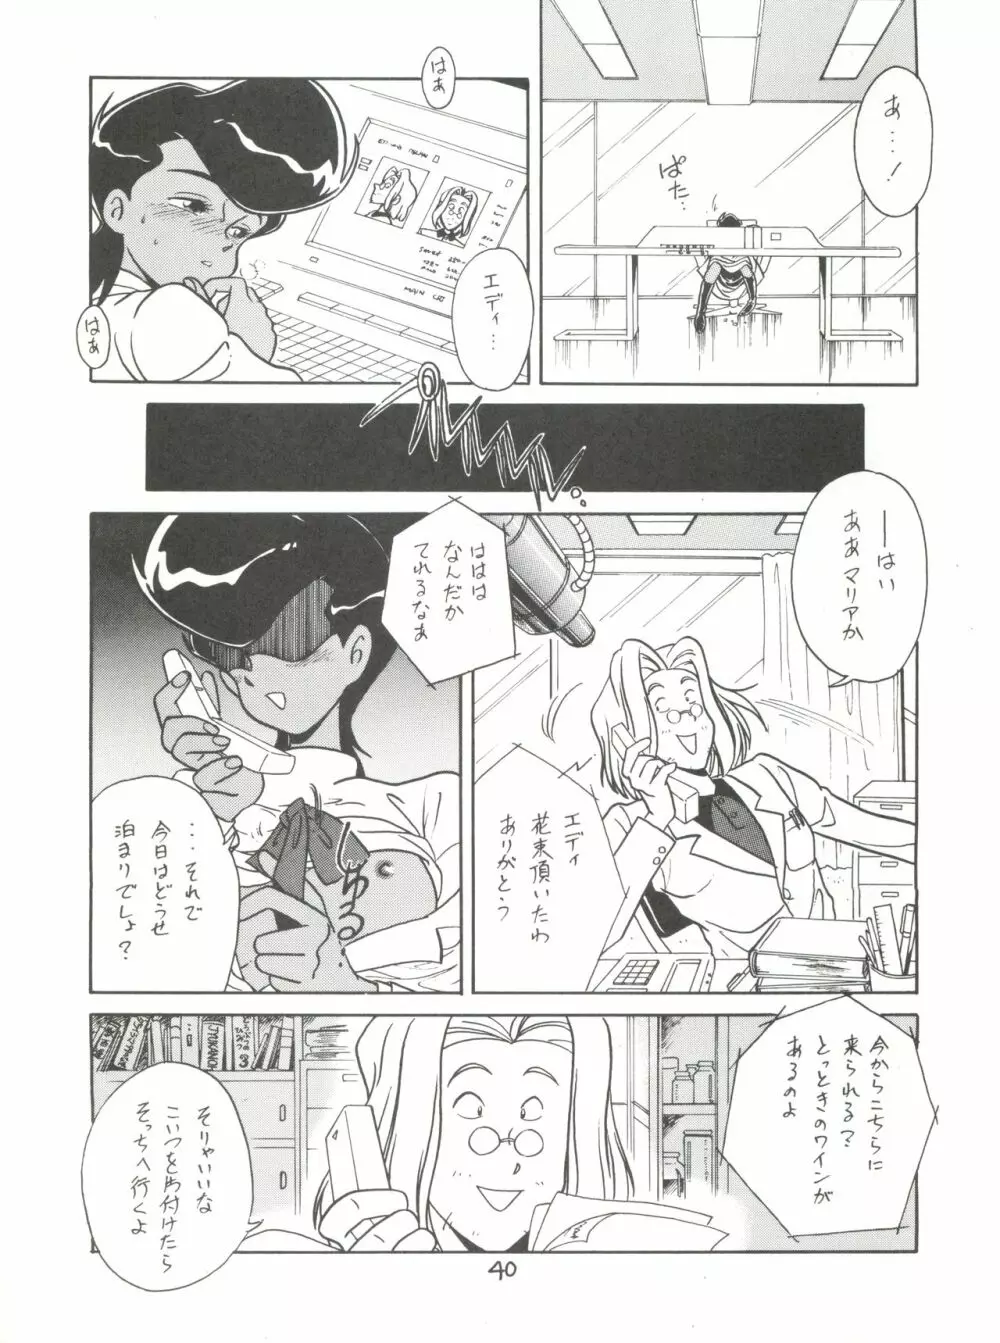 腹腹時計 Vol. II “YADAMON” 40ページ